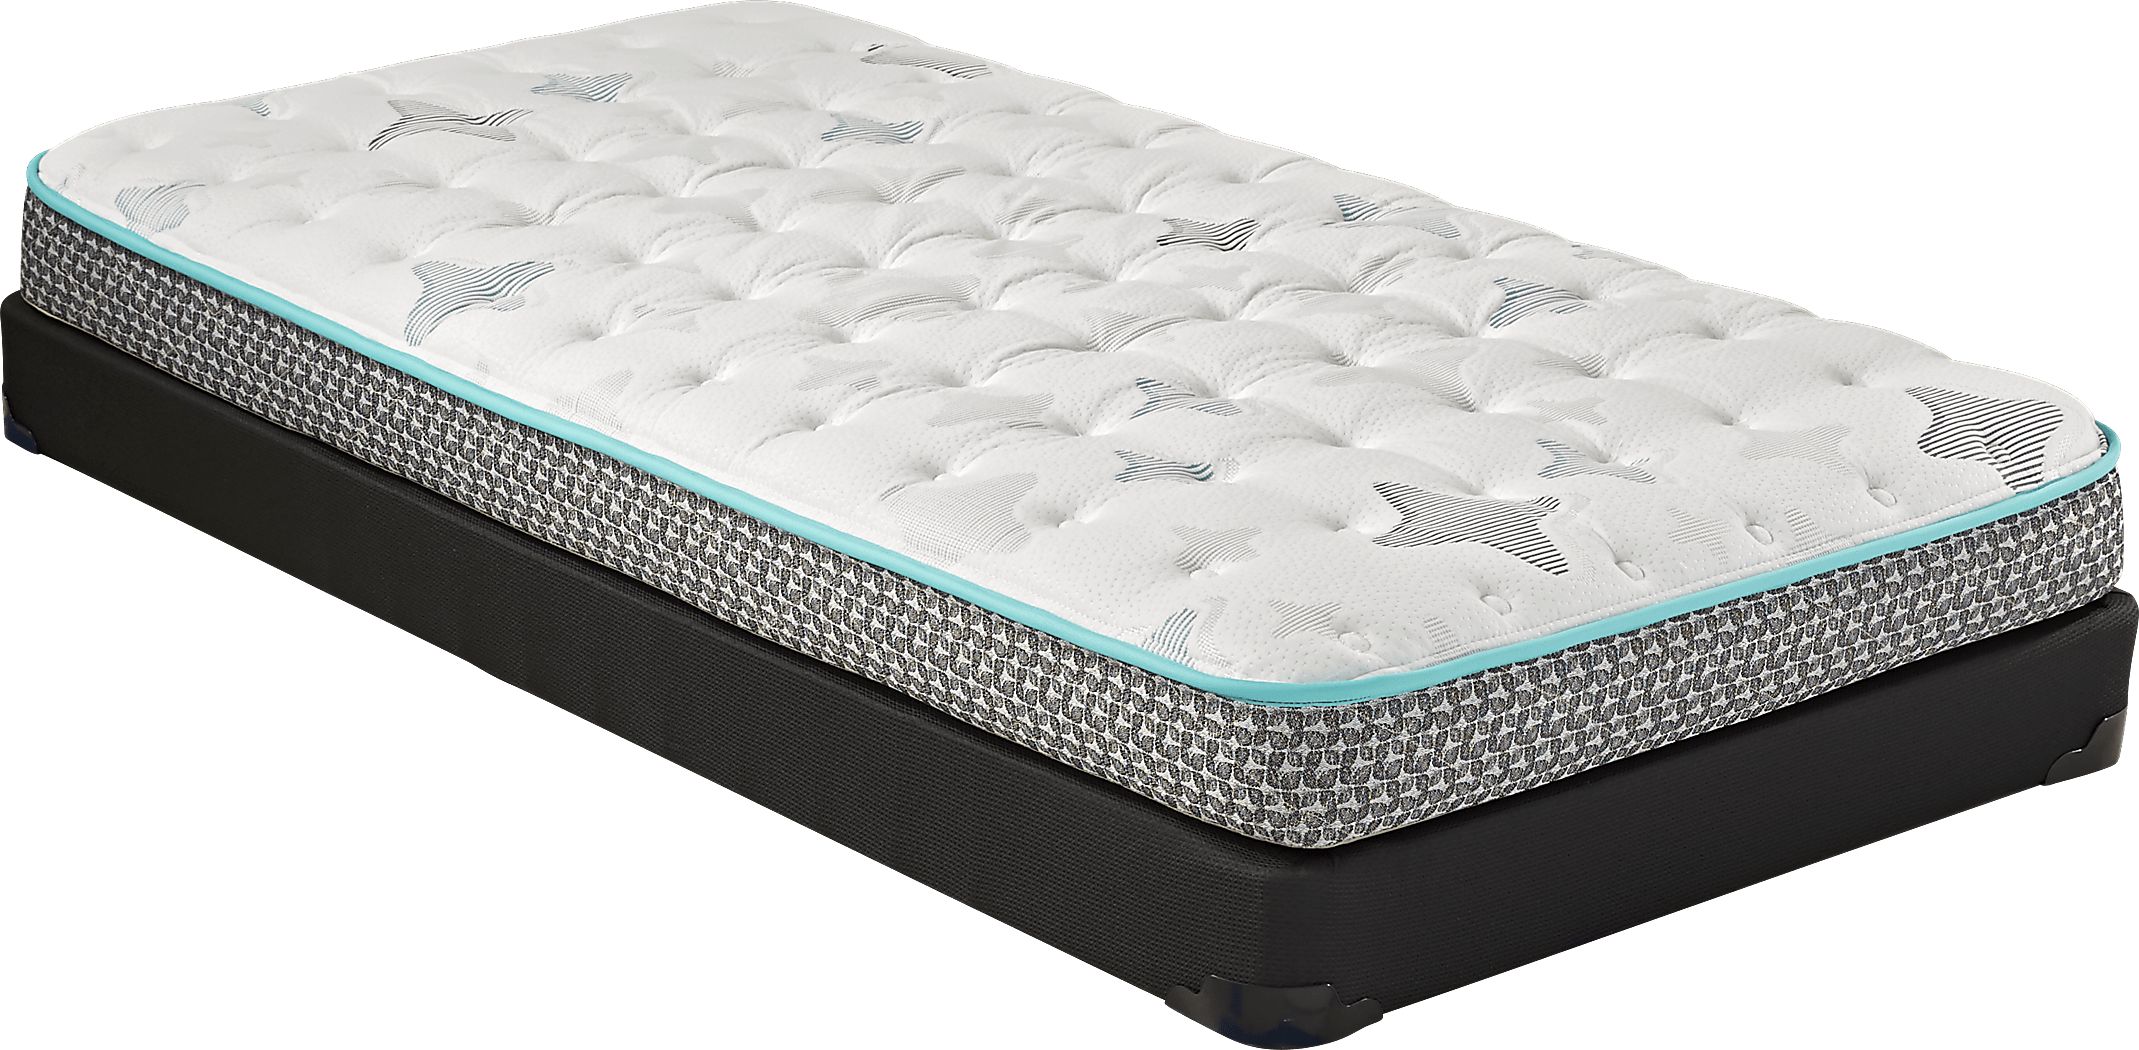 sealy z 101 twin mattress reviews